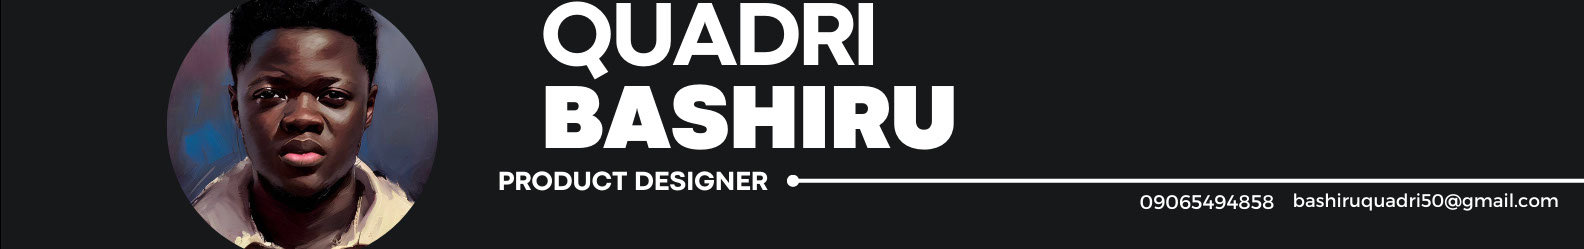 Banner de perfil de Quadri Bashiru